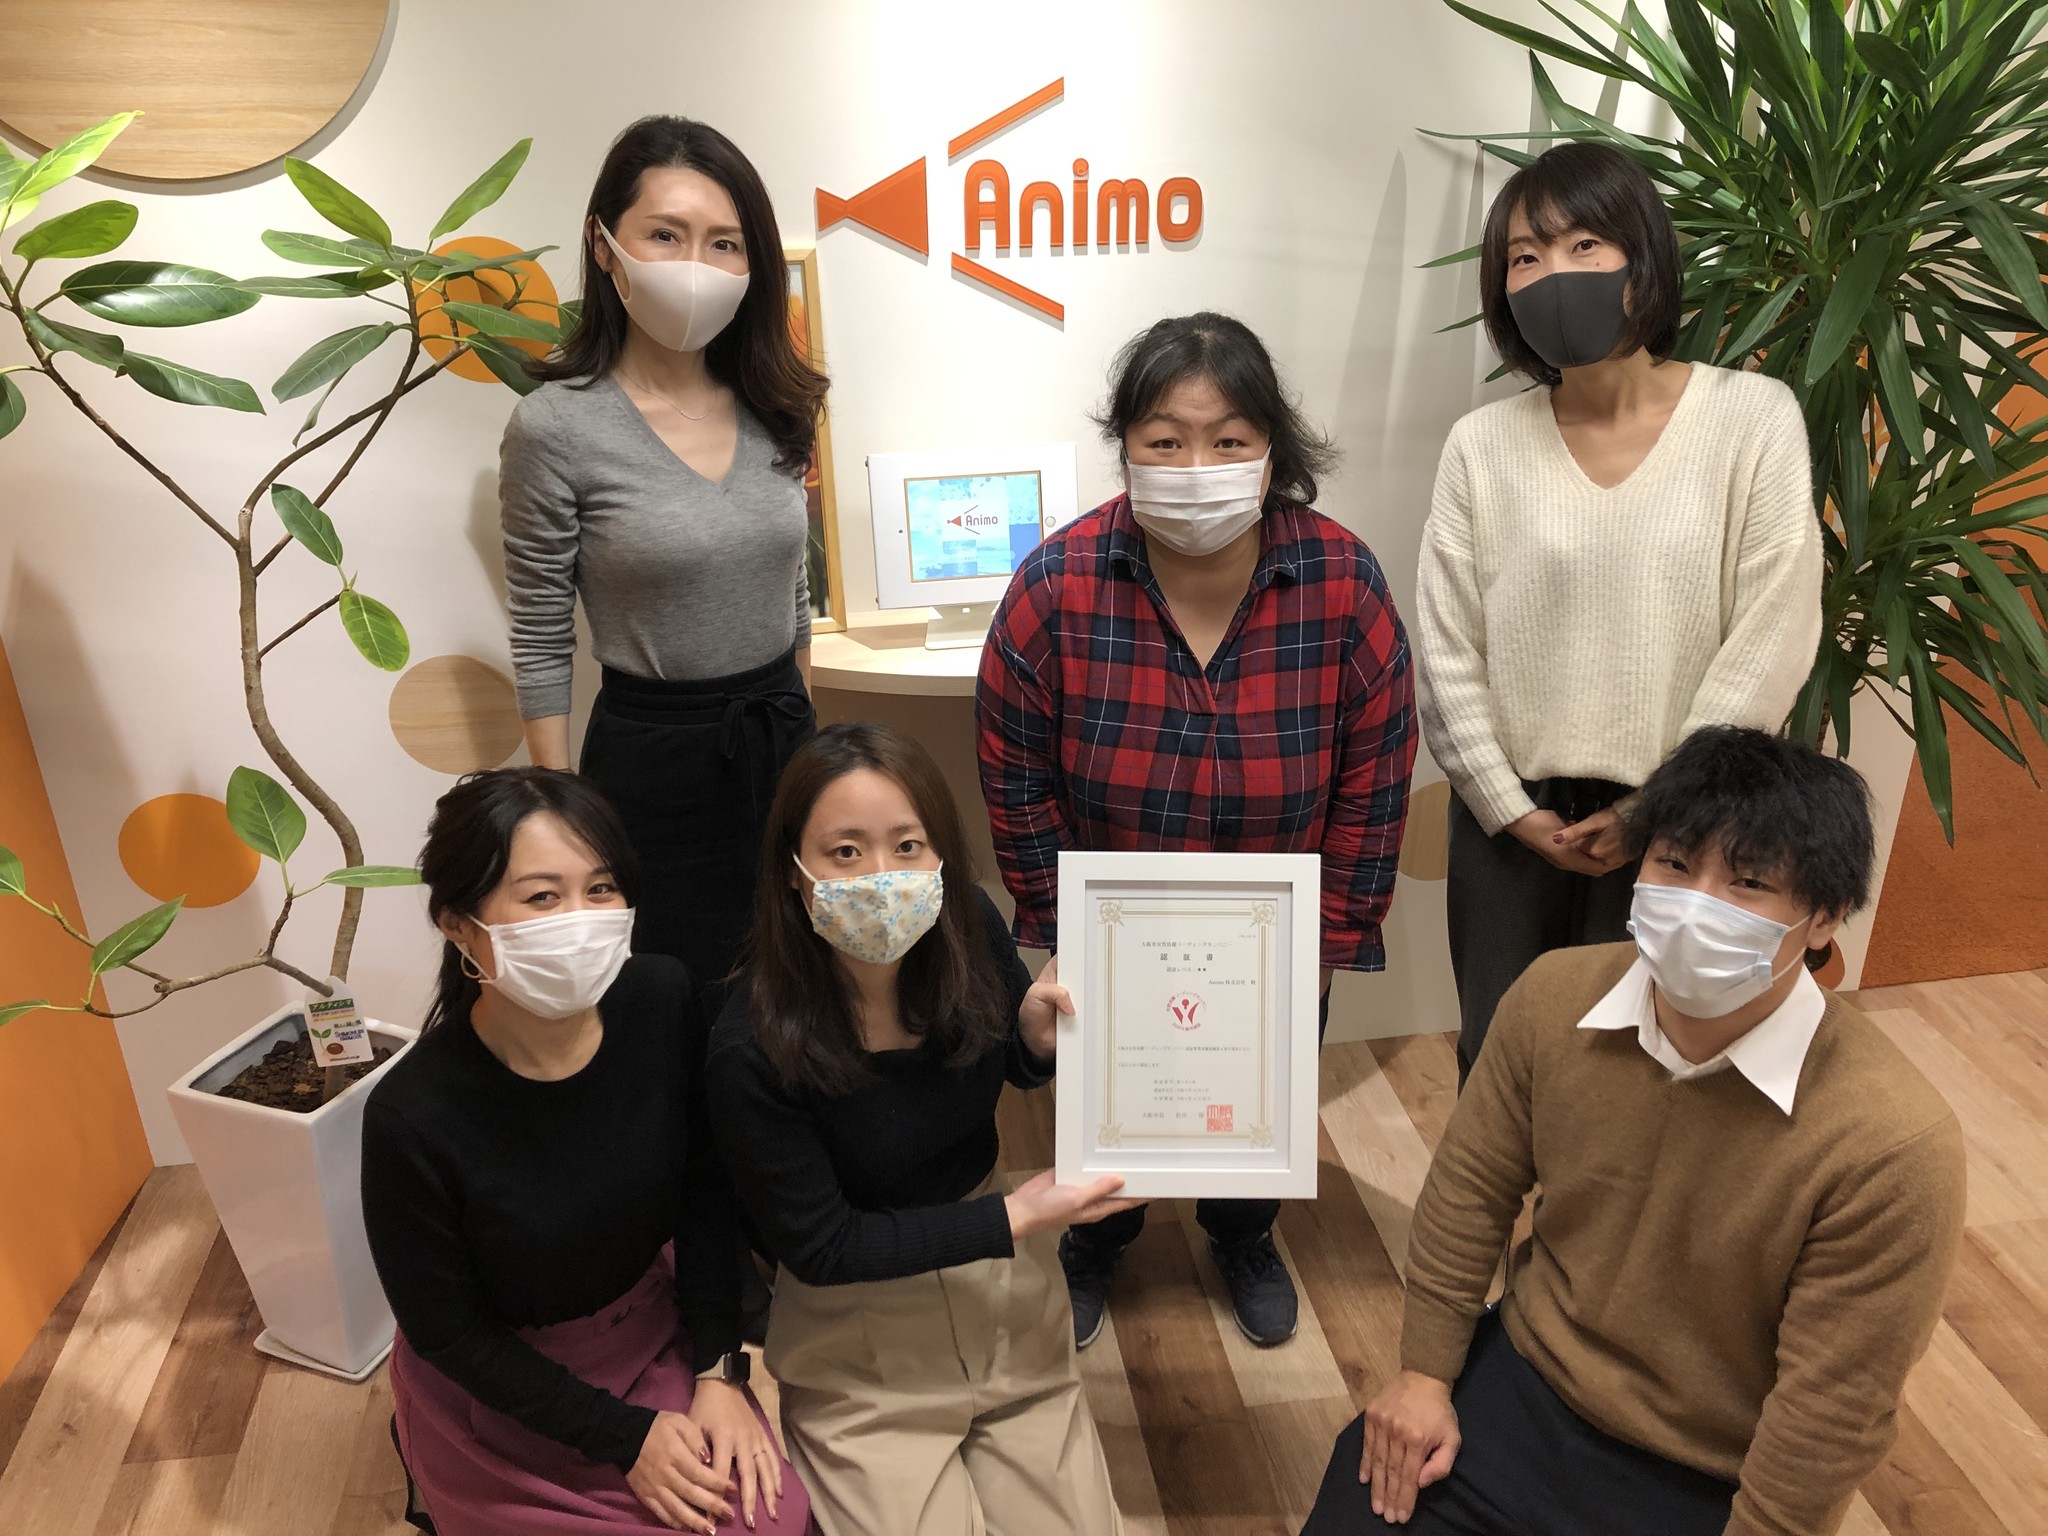 Animoが大阪市女性活躍リーディングカンパニーの最高位、二つ星認証を取得｜Animo株式会社のプレスリリース